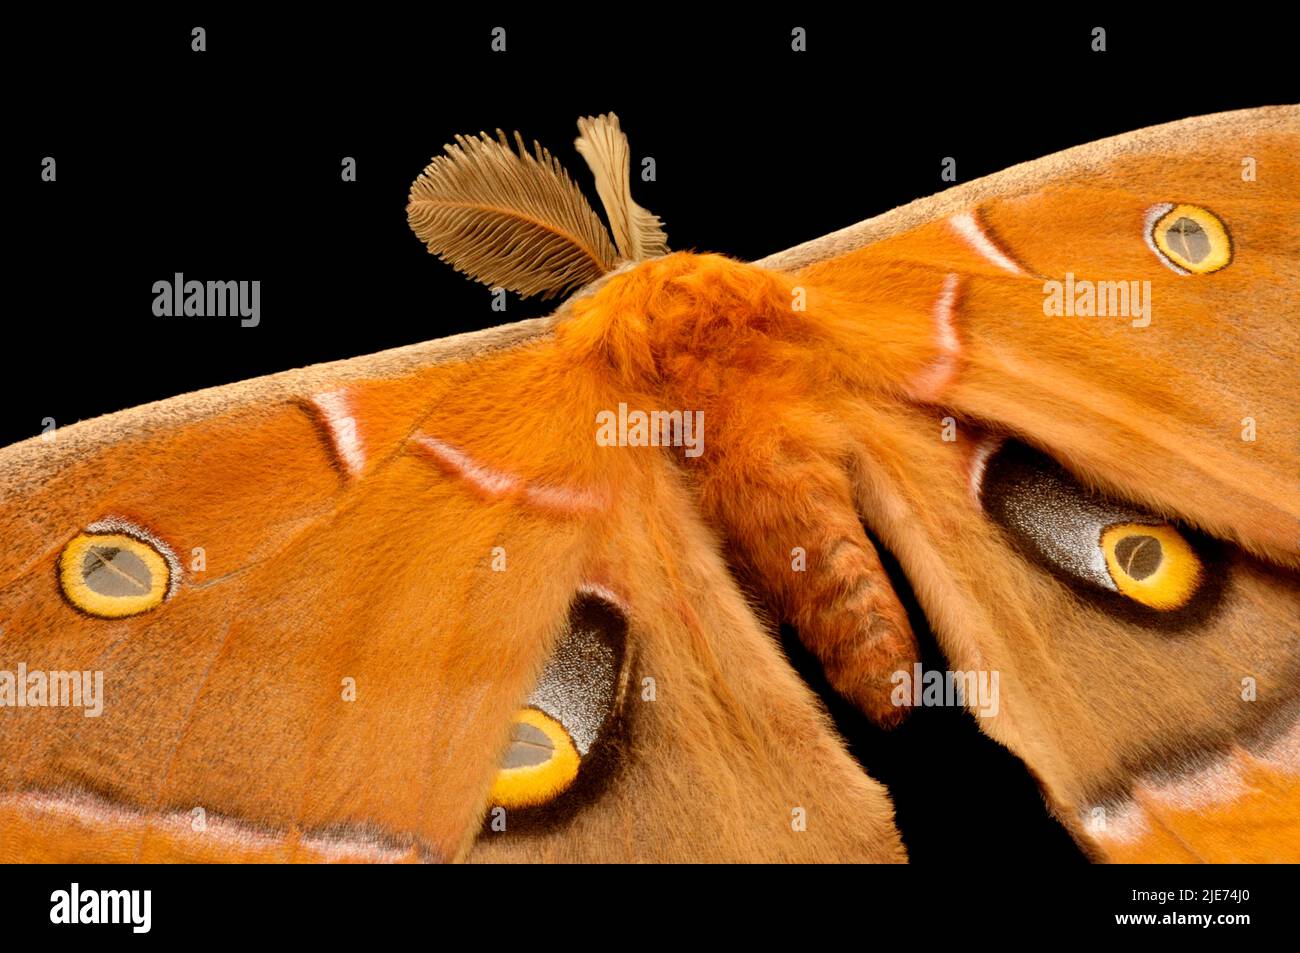 Le antenne di piuma del maschio Antheraea Polyphemus Moth aiutano a rilevare il profumo delle femmine. Gli occhiali mimano quelli di un gufo per scoraggiare i predatori Foto Stock